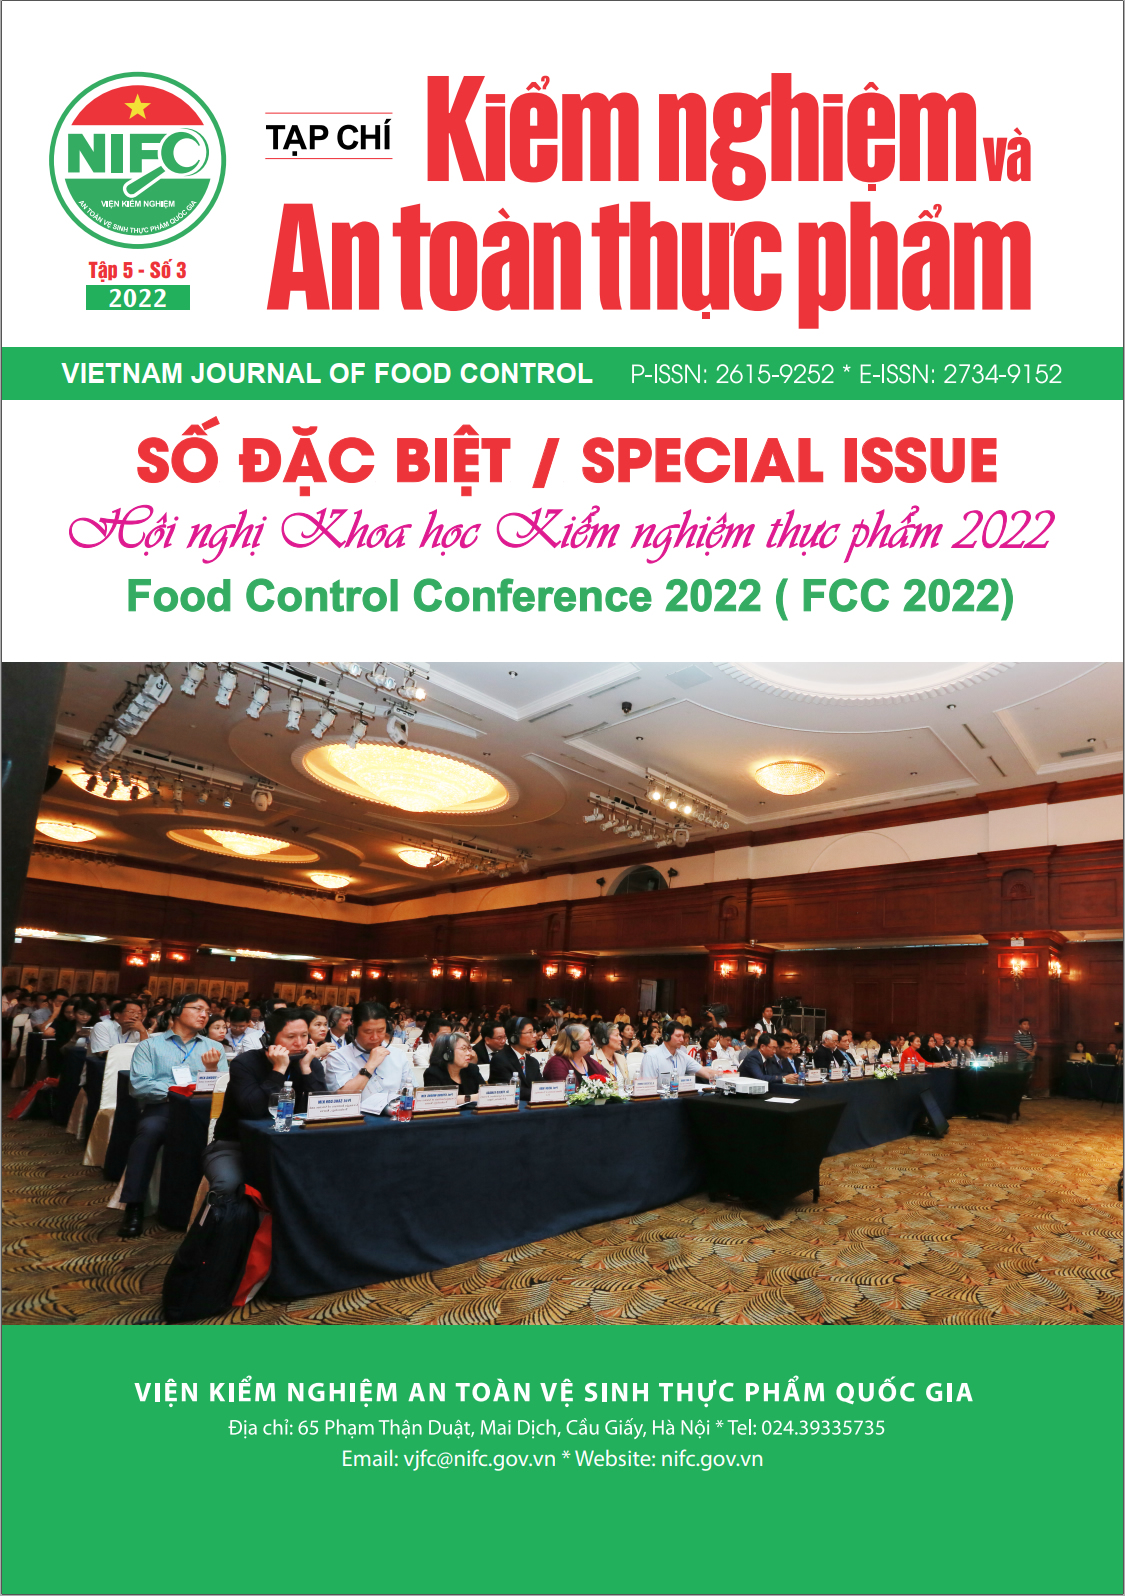 Vietnam Journal of Food Control (VJFC)